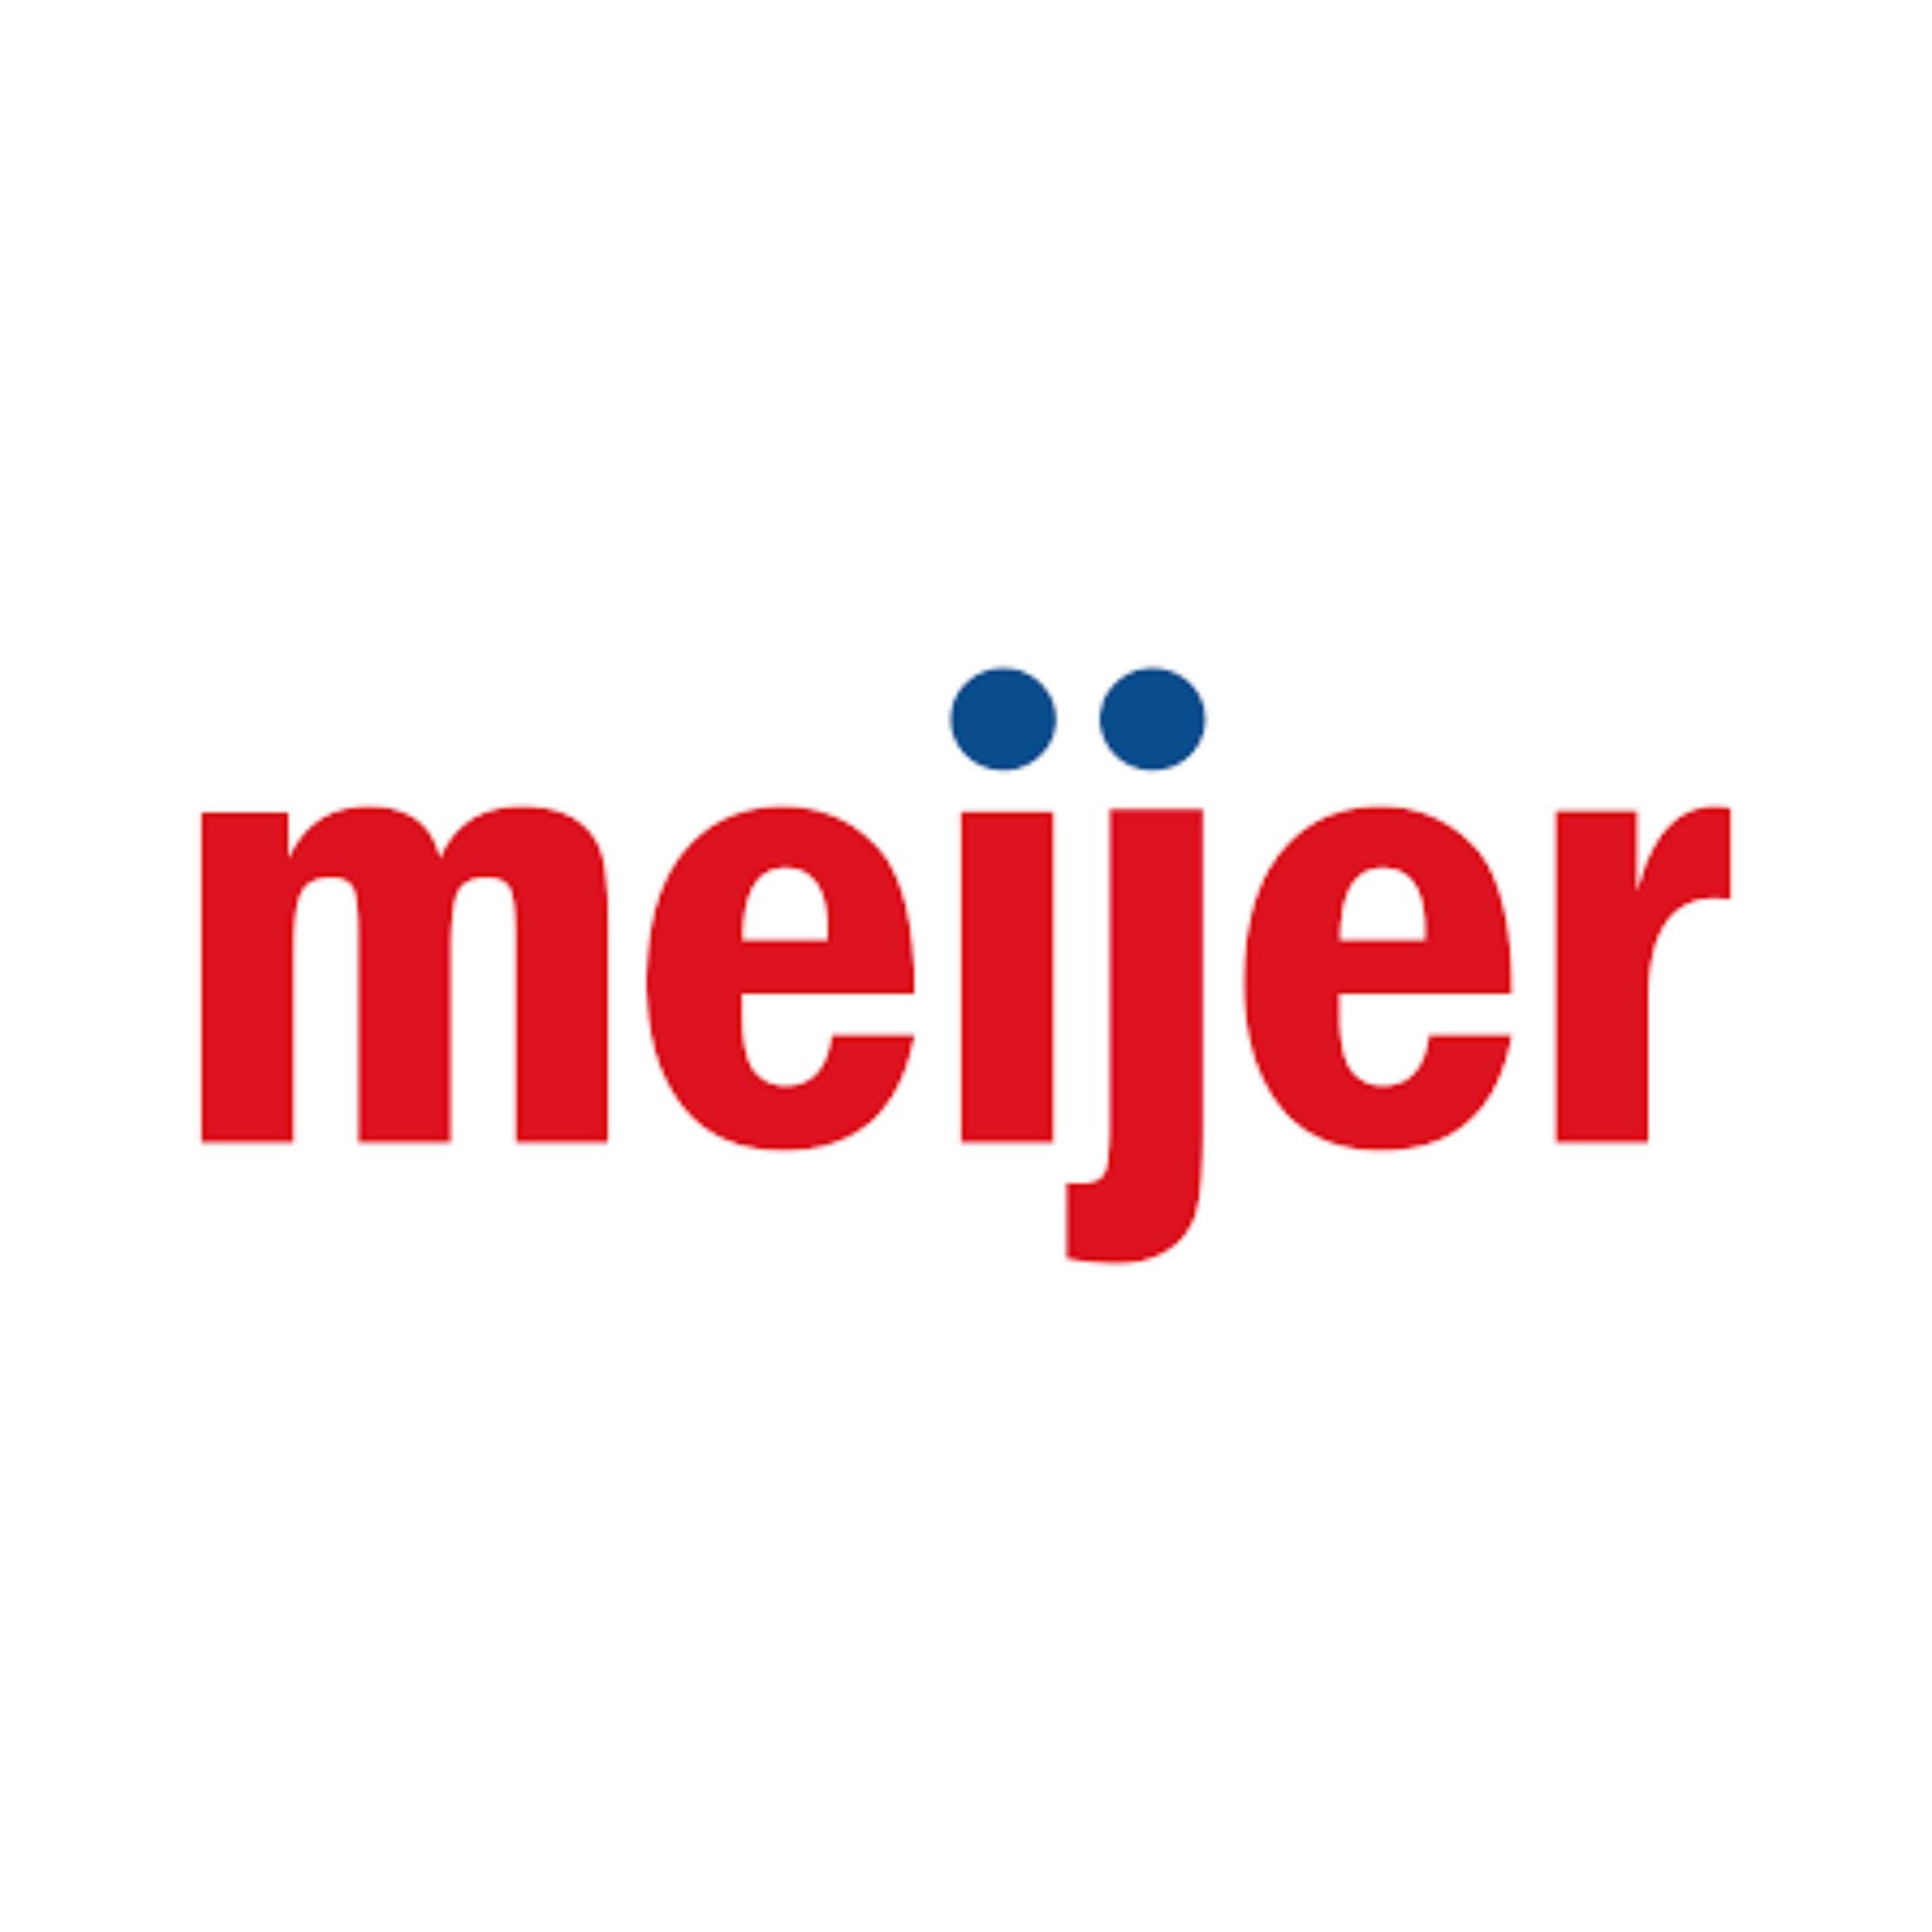 Sponsor Images - Meijer.jpg